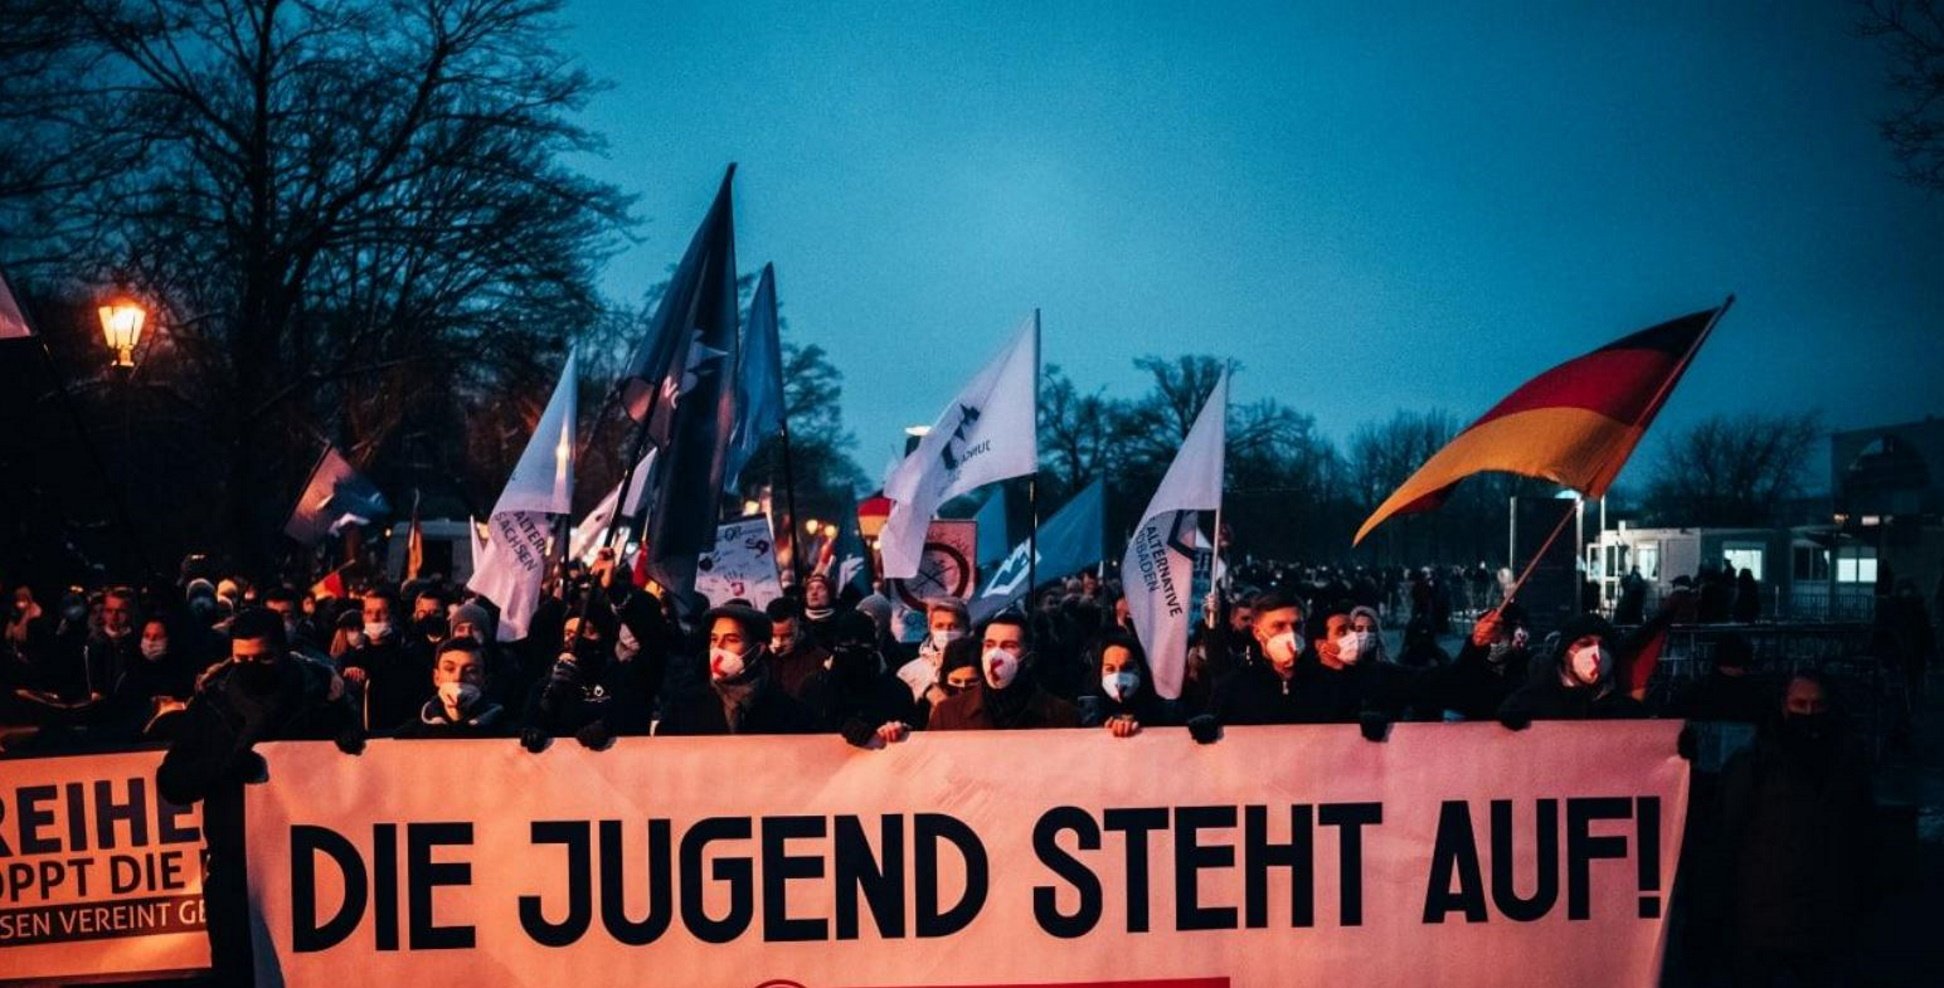 Alemania debate prohibir el partido de extrema derecha AdF por sus planes autoritarios